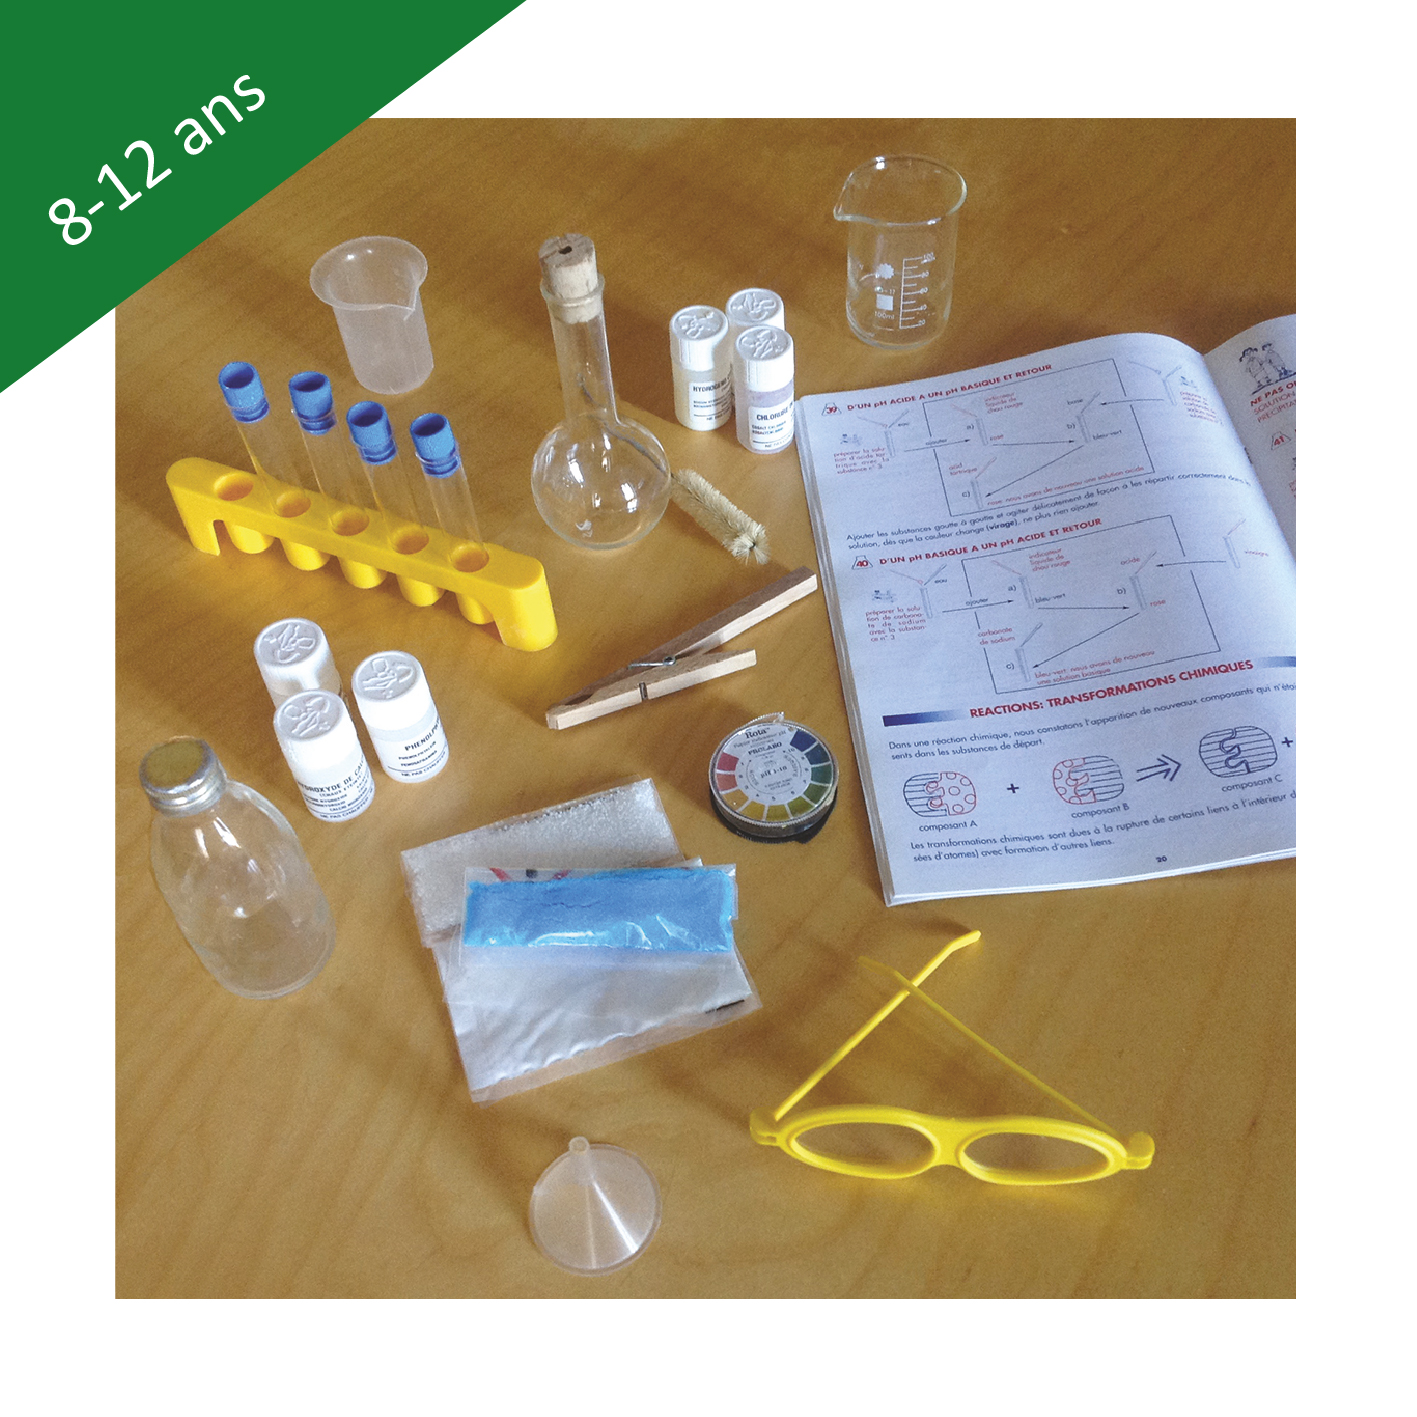 Kit de chimie – la Pedagotheque